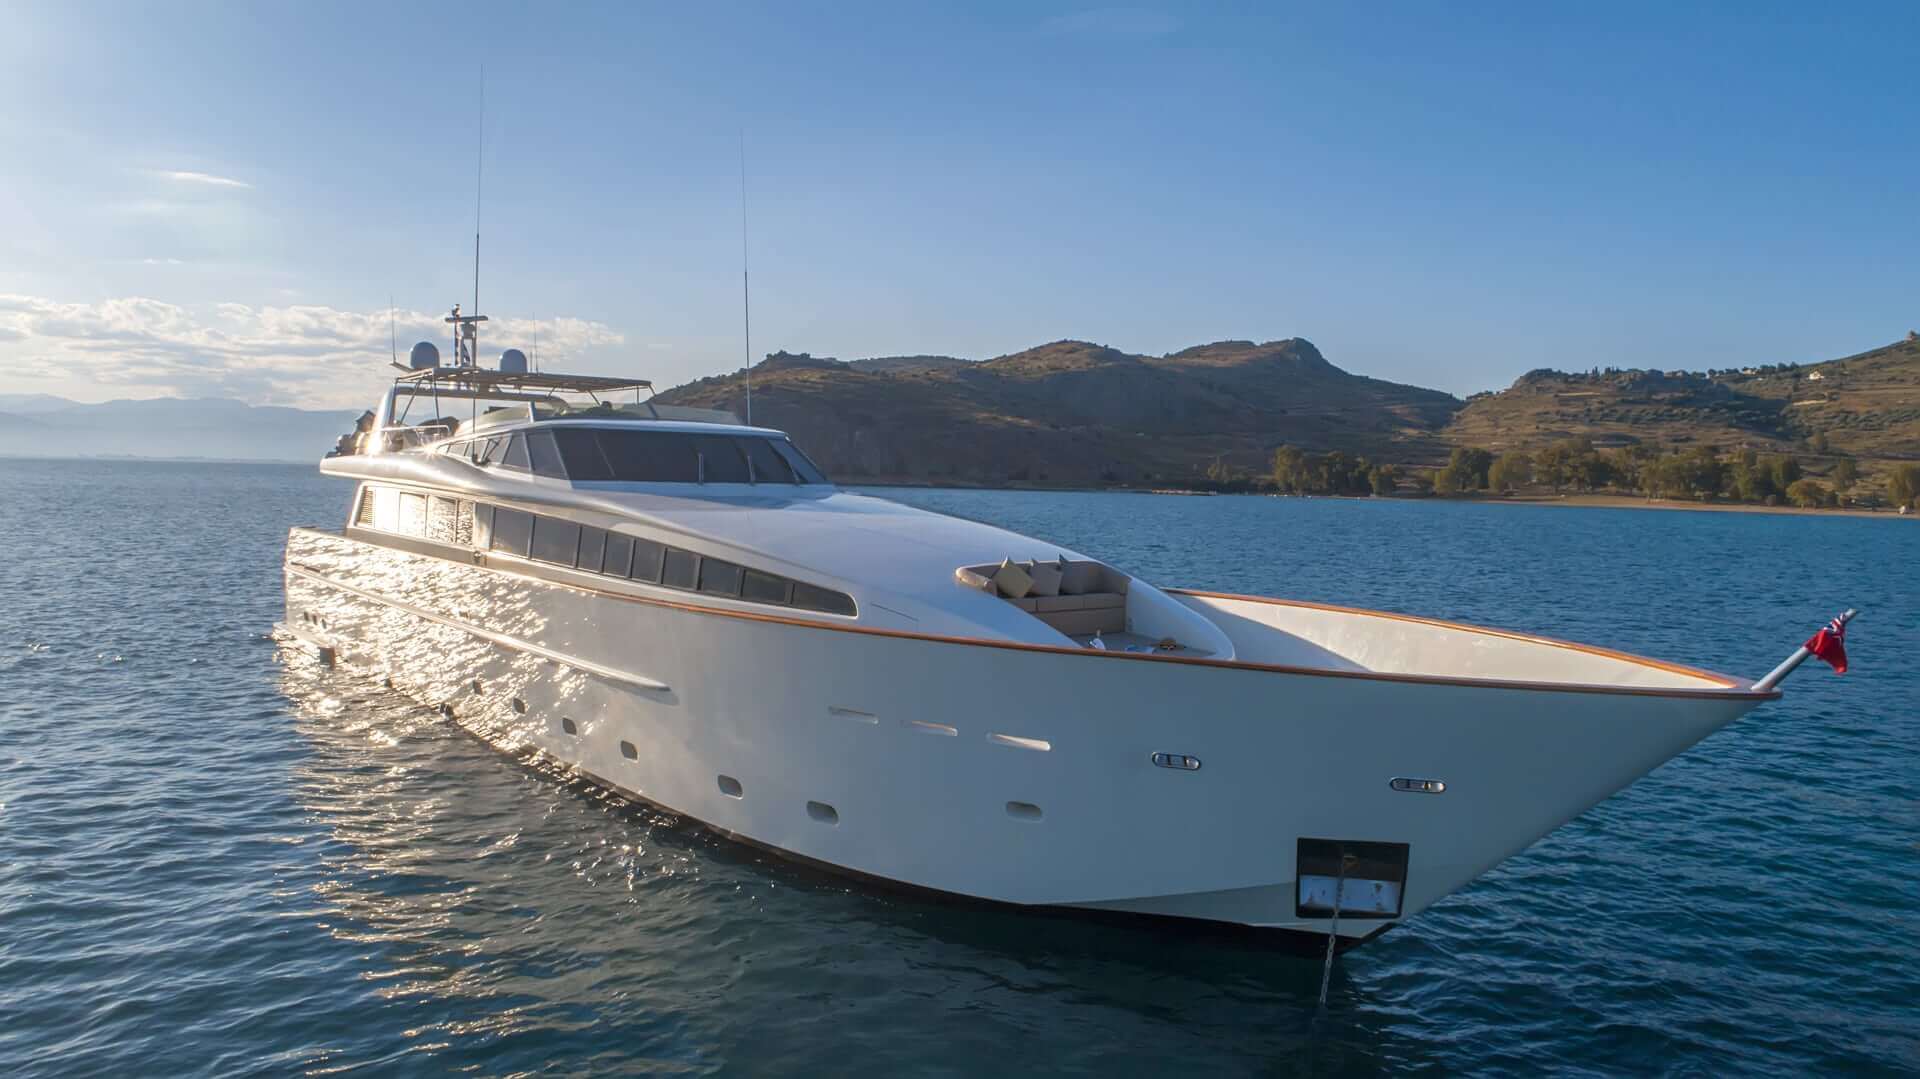 Luxury yacht rentals Greek islands. Yacht hire Greek islands. Yacht charters in Greece with crew. Motor yacht charter Greece, Mediterranean.